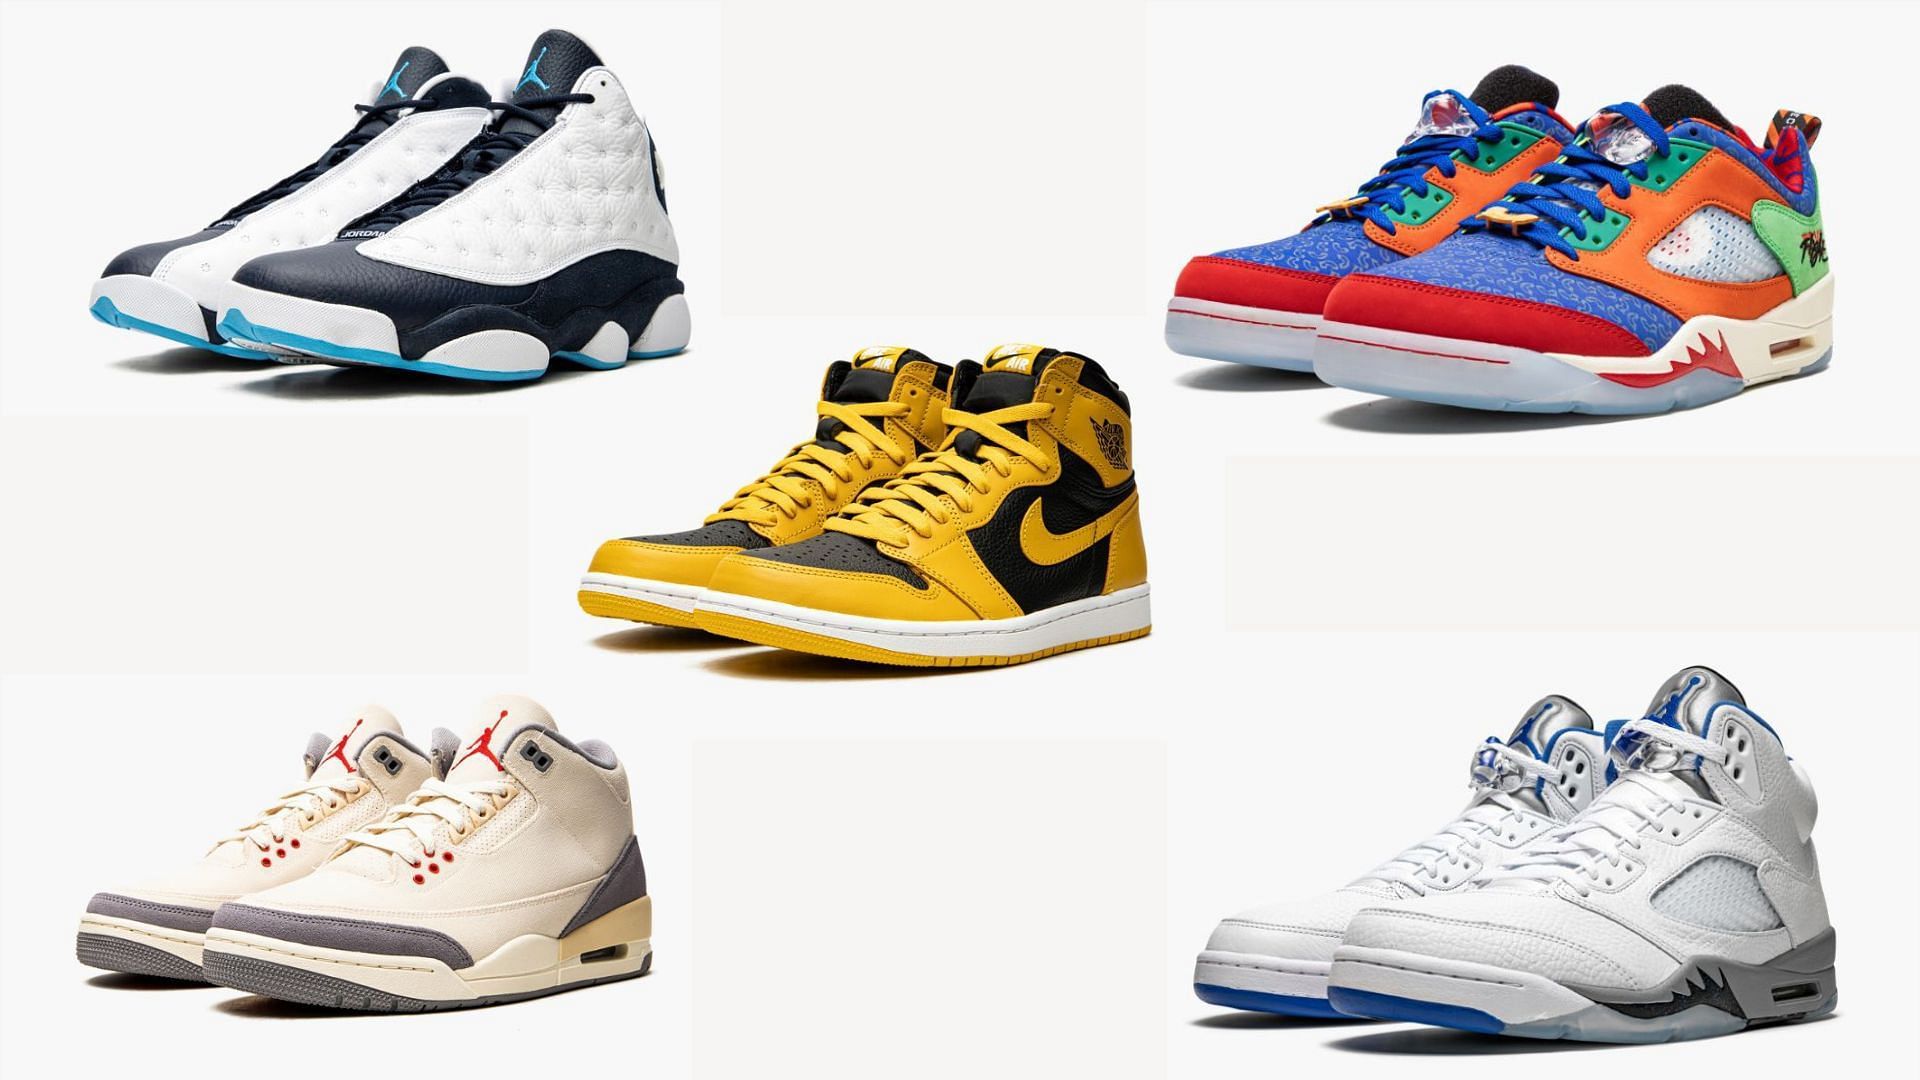 Air Jordans under $300 (Image via Sportskeeda)